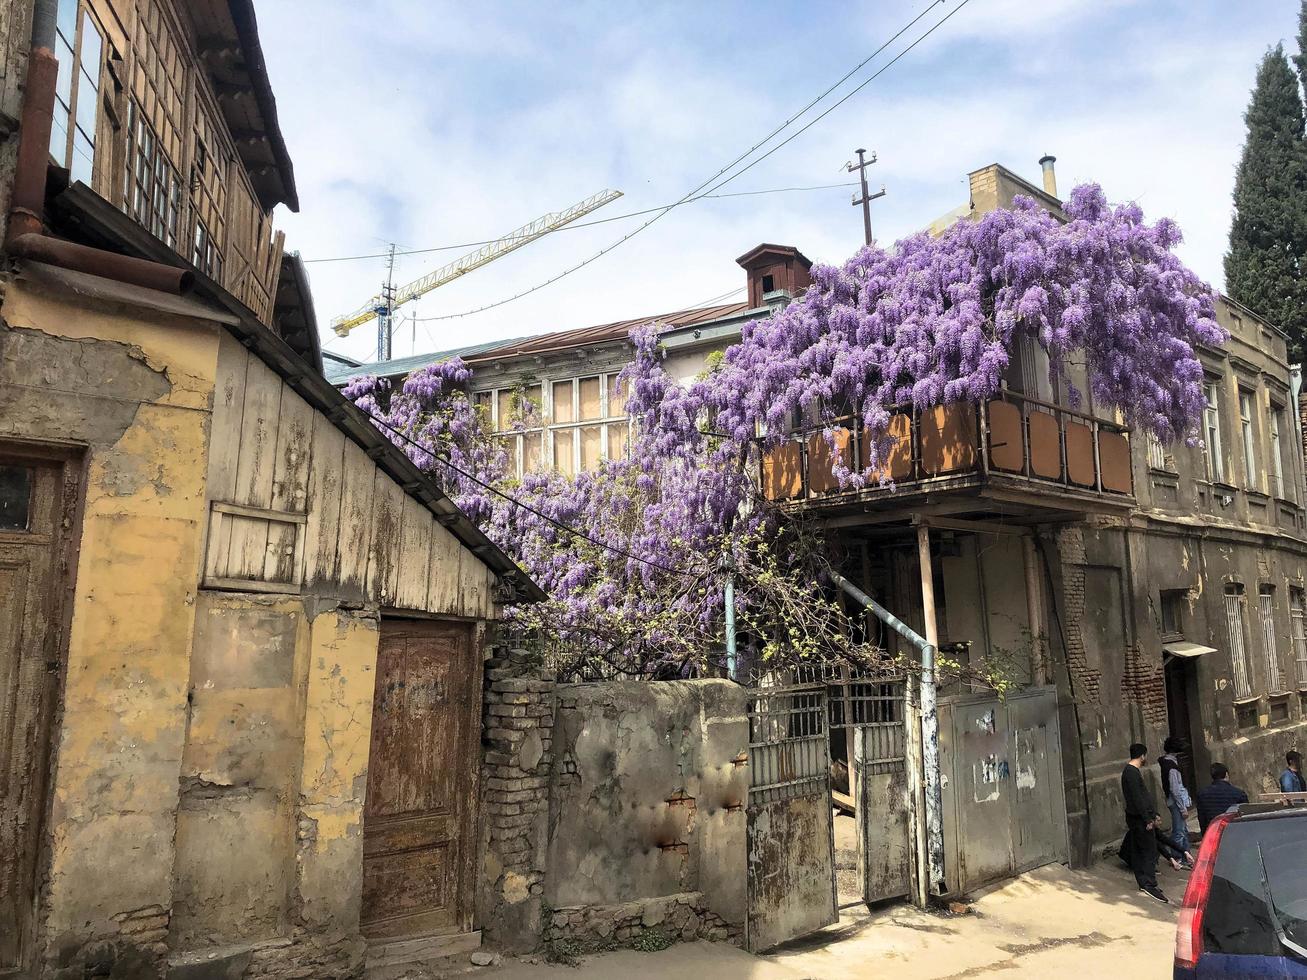 Schönes altes braunes dreistöckiges Haus, Slums mit lila Fliederbüschen im alten Stadtgebiet foto